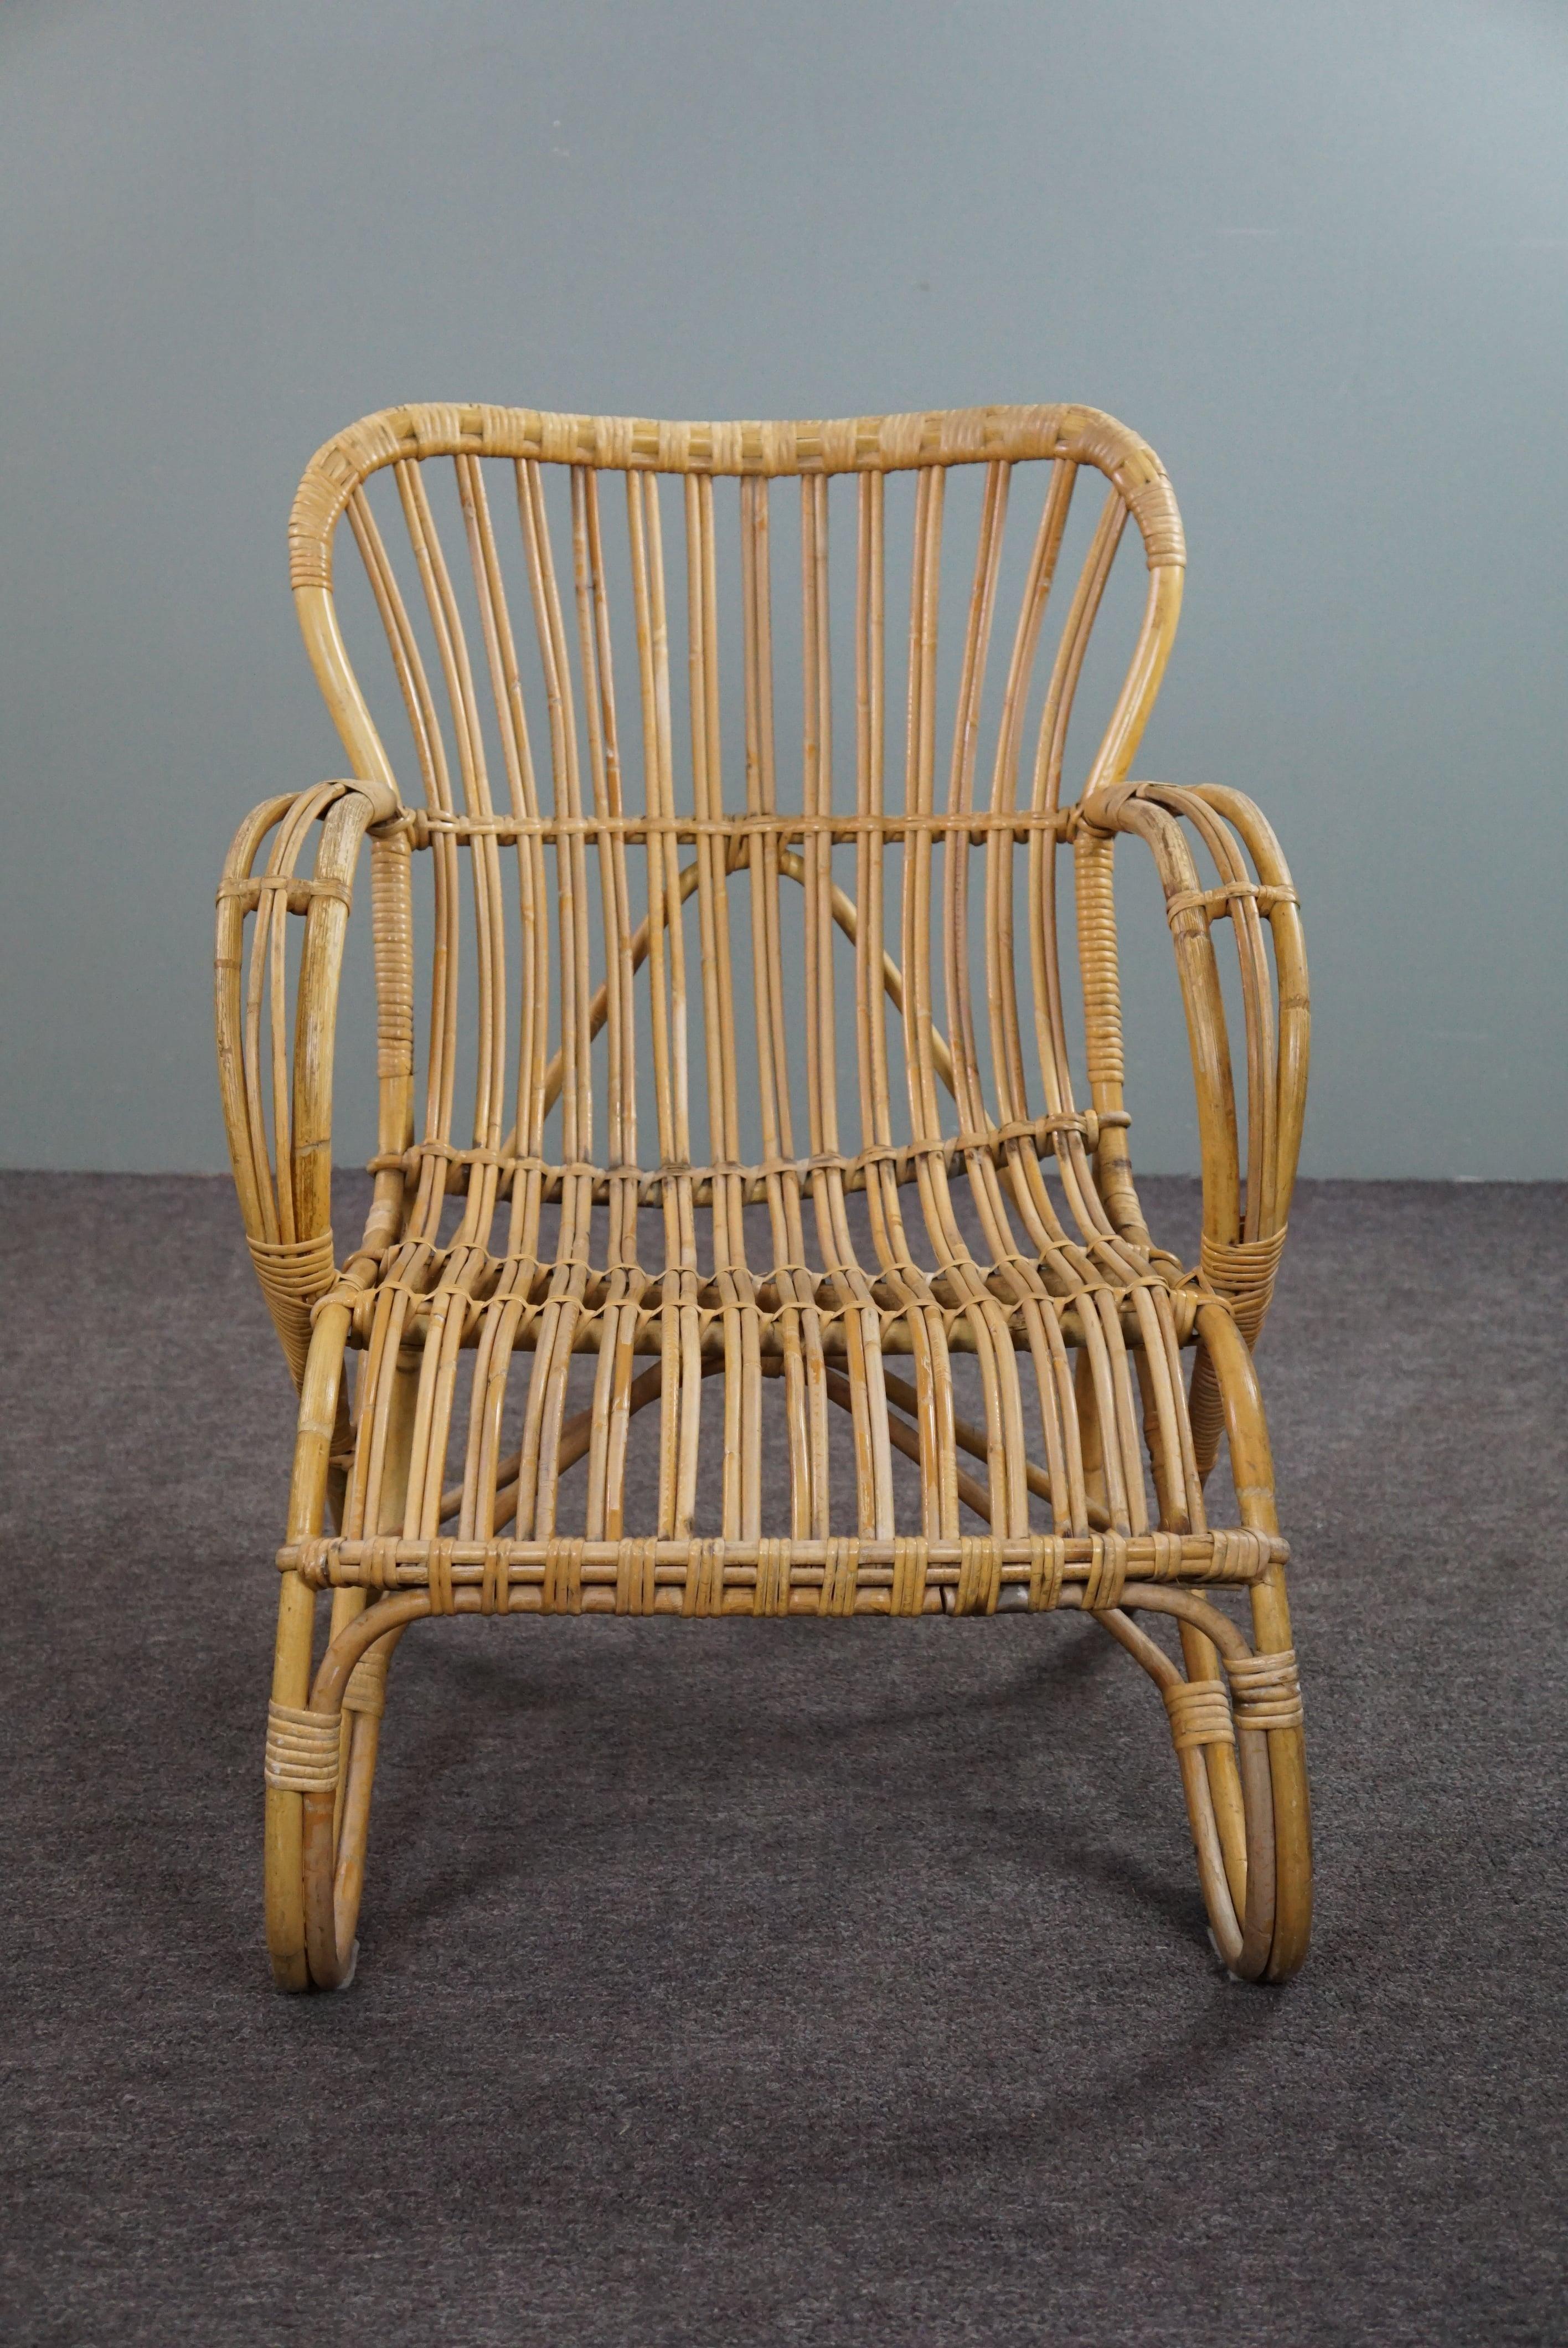 Angeboten wird dieser einzigartige und sehr schön gestaltete Dutch Design Sessel aus den 1950er Jahren in den Niederlanden.

Dieser Rattansessel Belse 8 hat ein zeitloses Design, eine schön geformte und ergonomische Rückenlehne und schöne